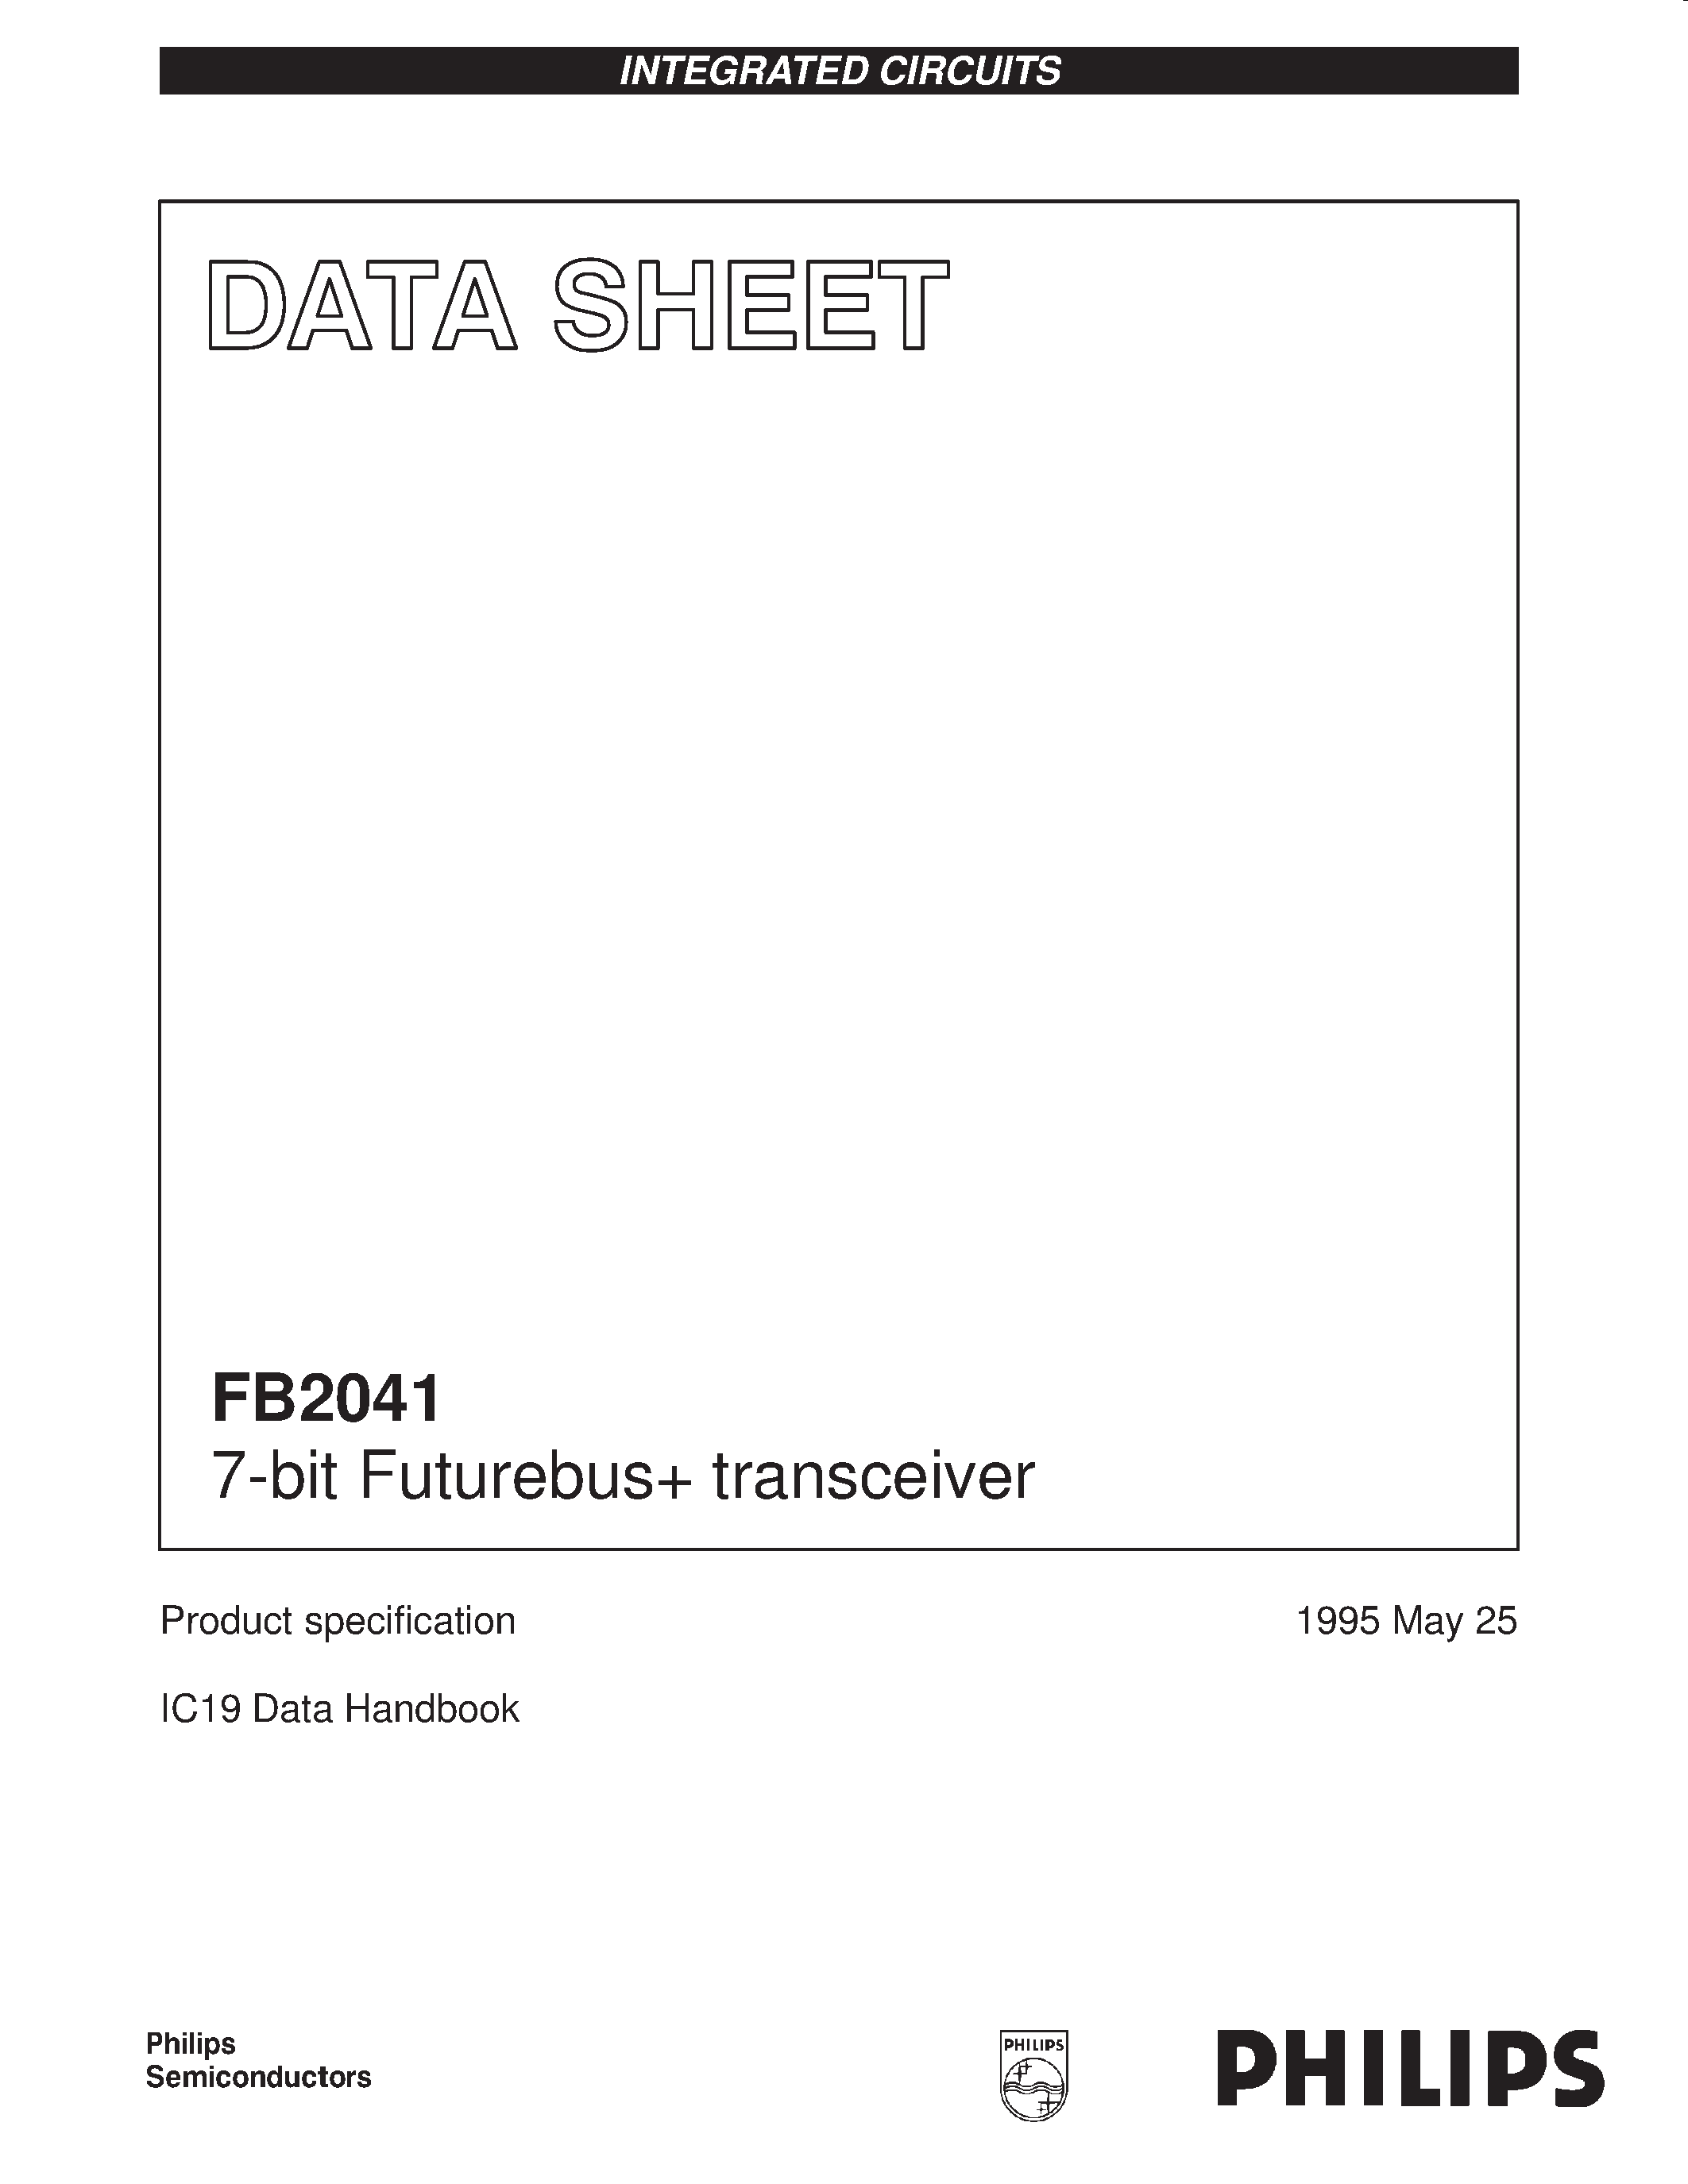 Даташит CD3207 - 7-bit Futurebus transceiver страница 1